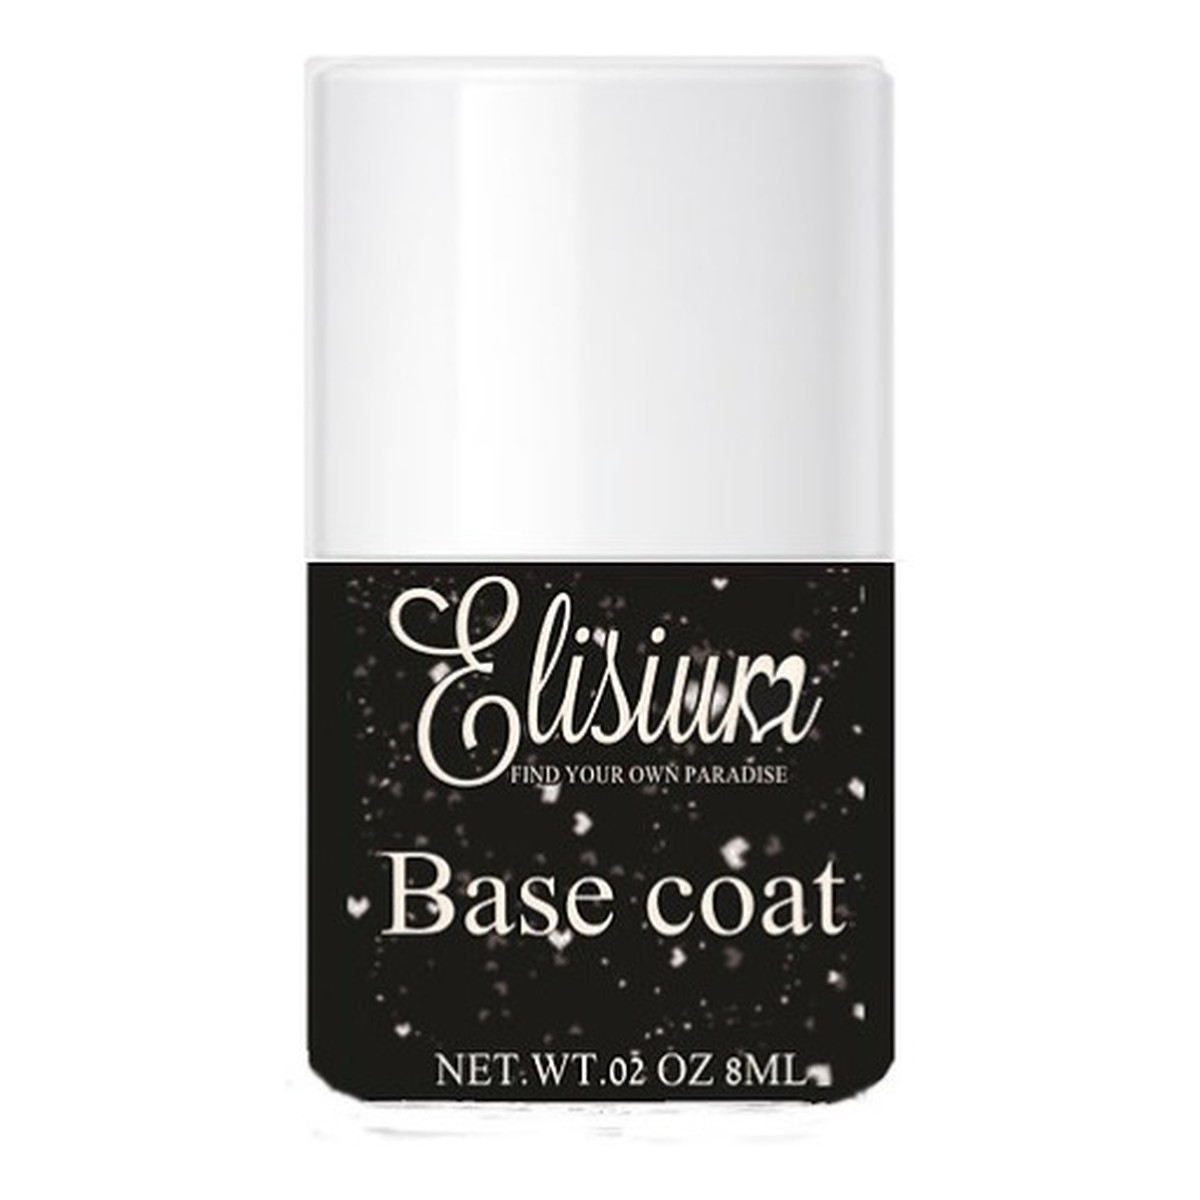 Elisium Base Coat 8ml